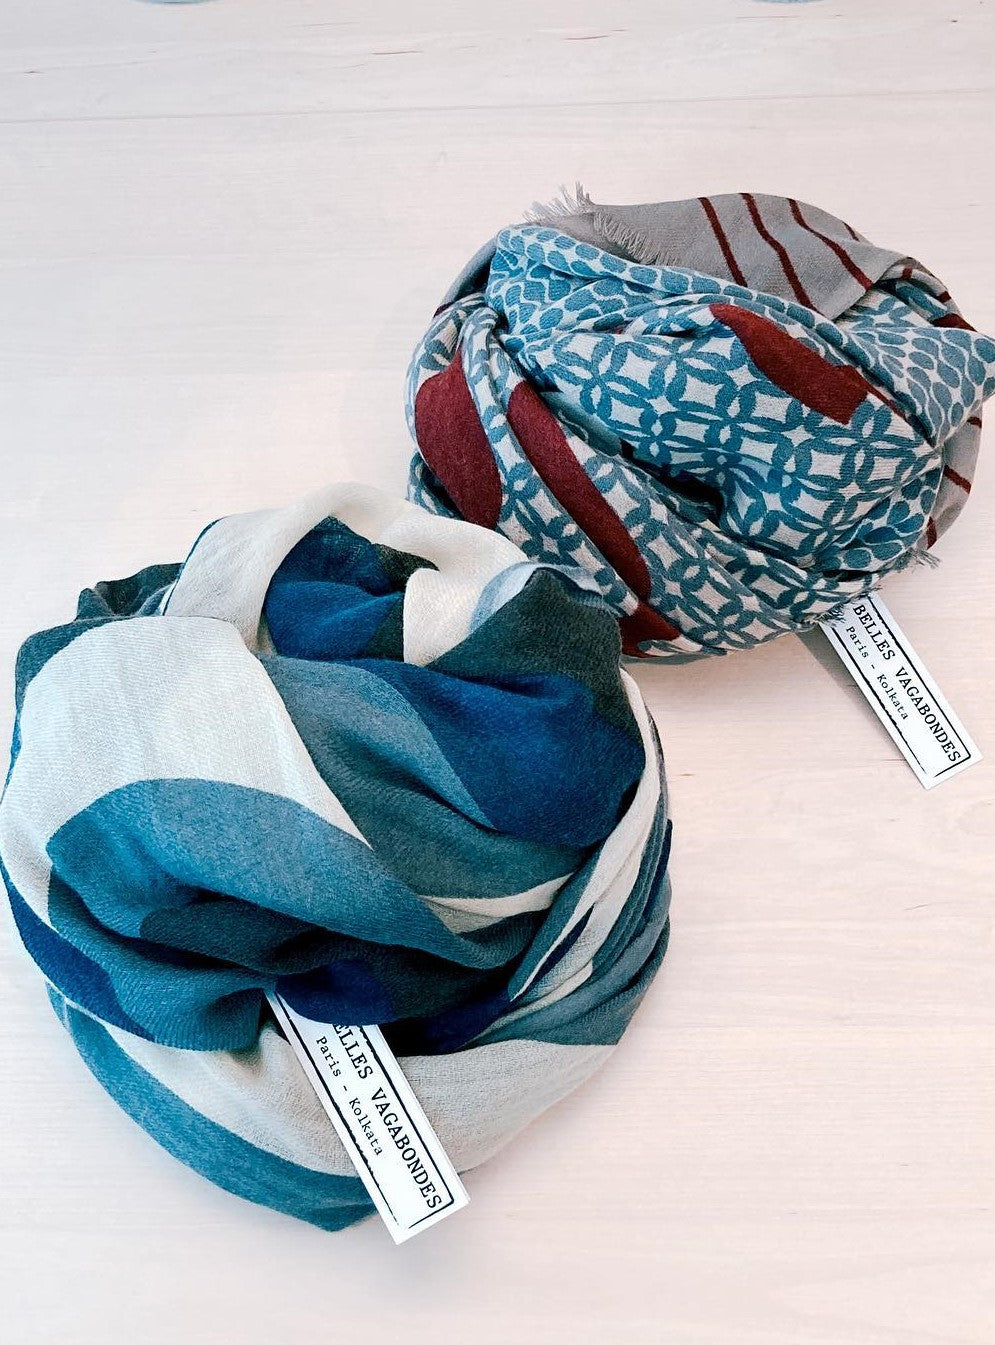 foulards enroulés de la collection Les Belles Vagabondes disponibles à Ce Qui Nous Lie Lausanne